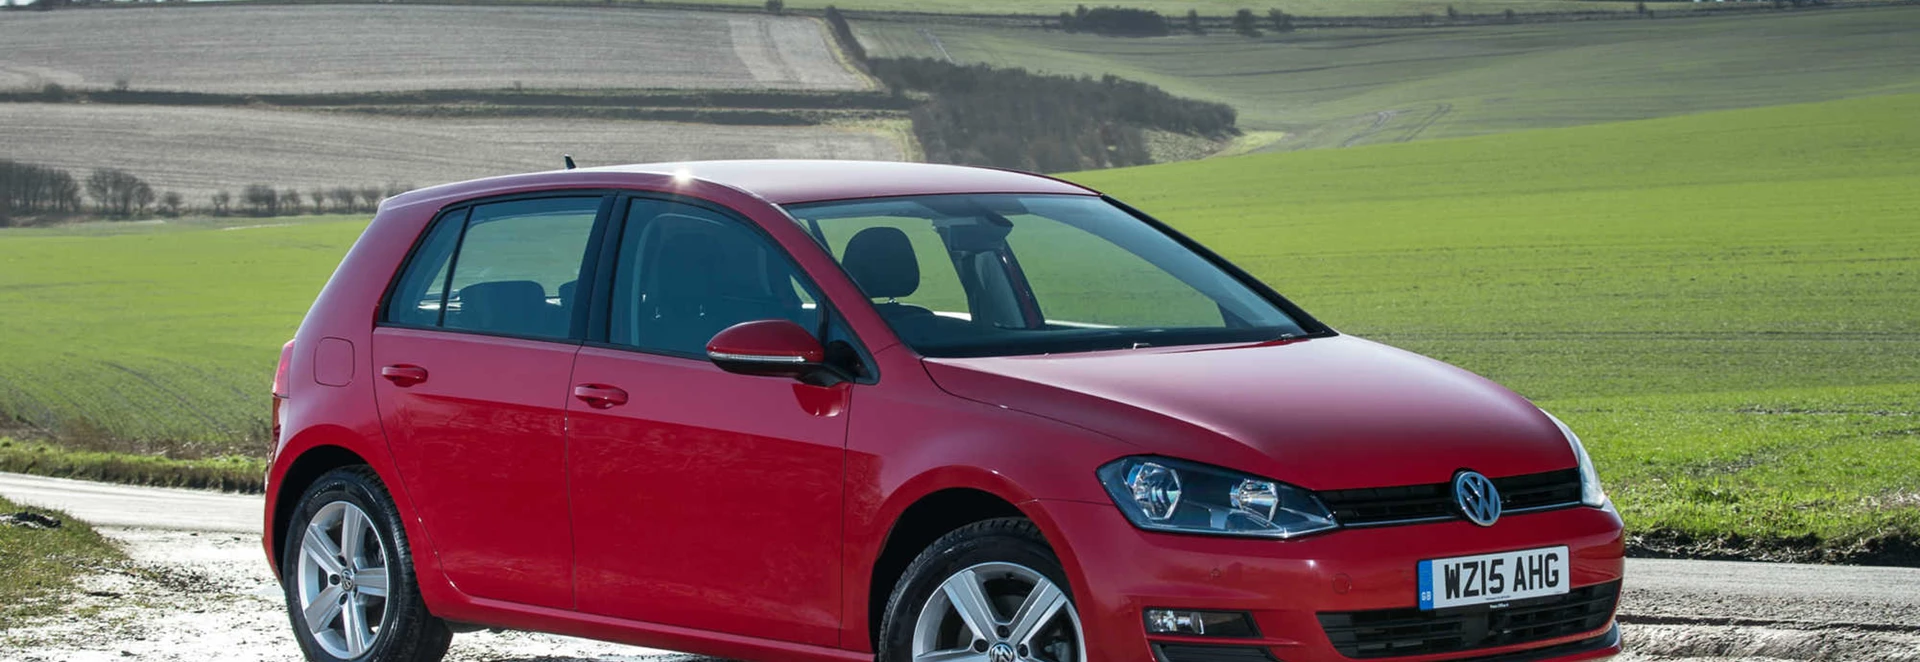 Volkswagen Golf hatchback review 